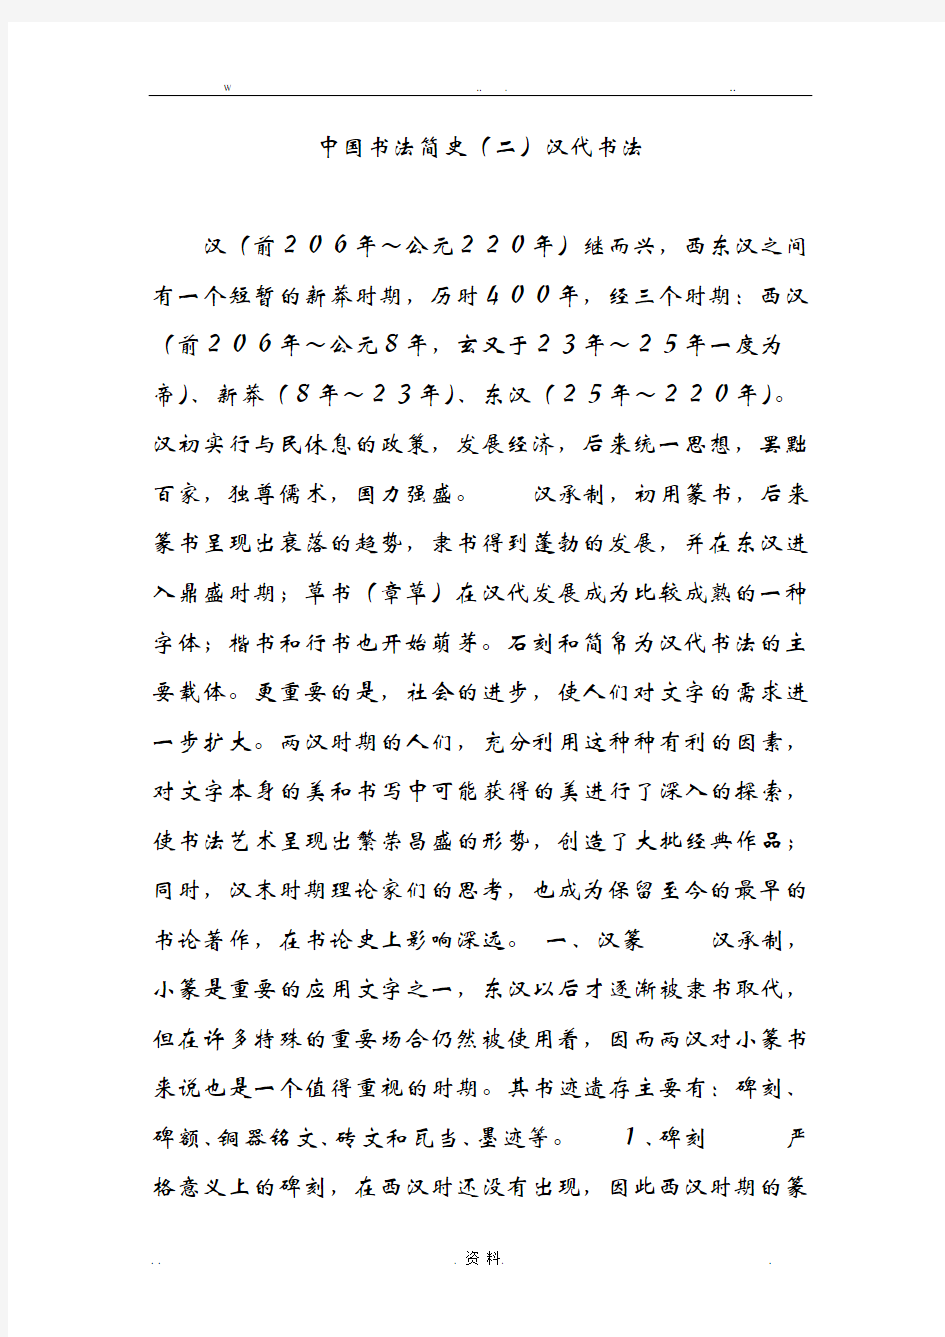 中国书法简史(二)汉代书法